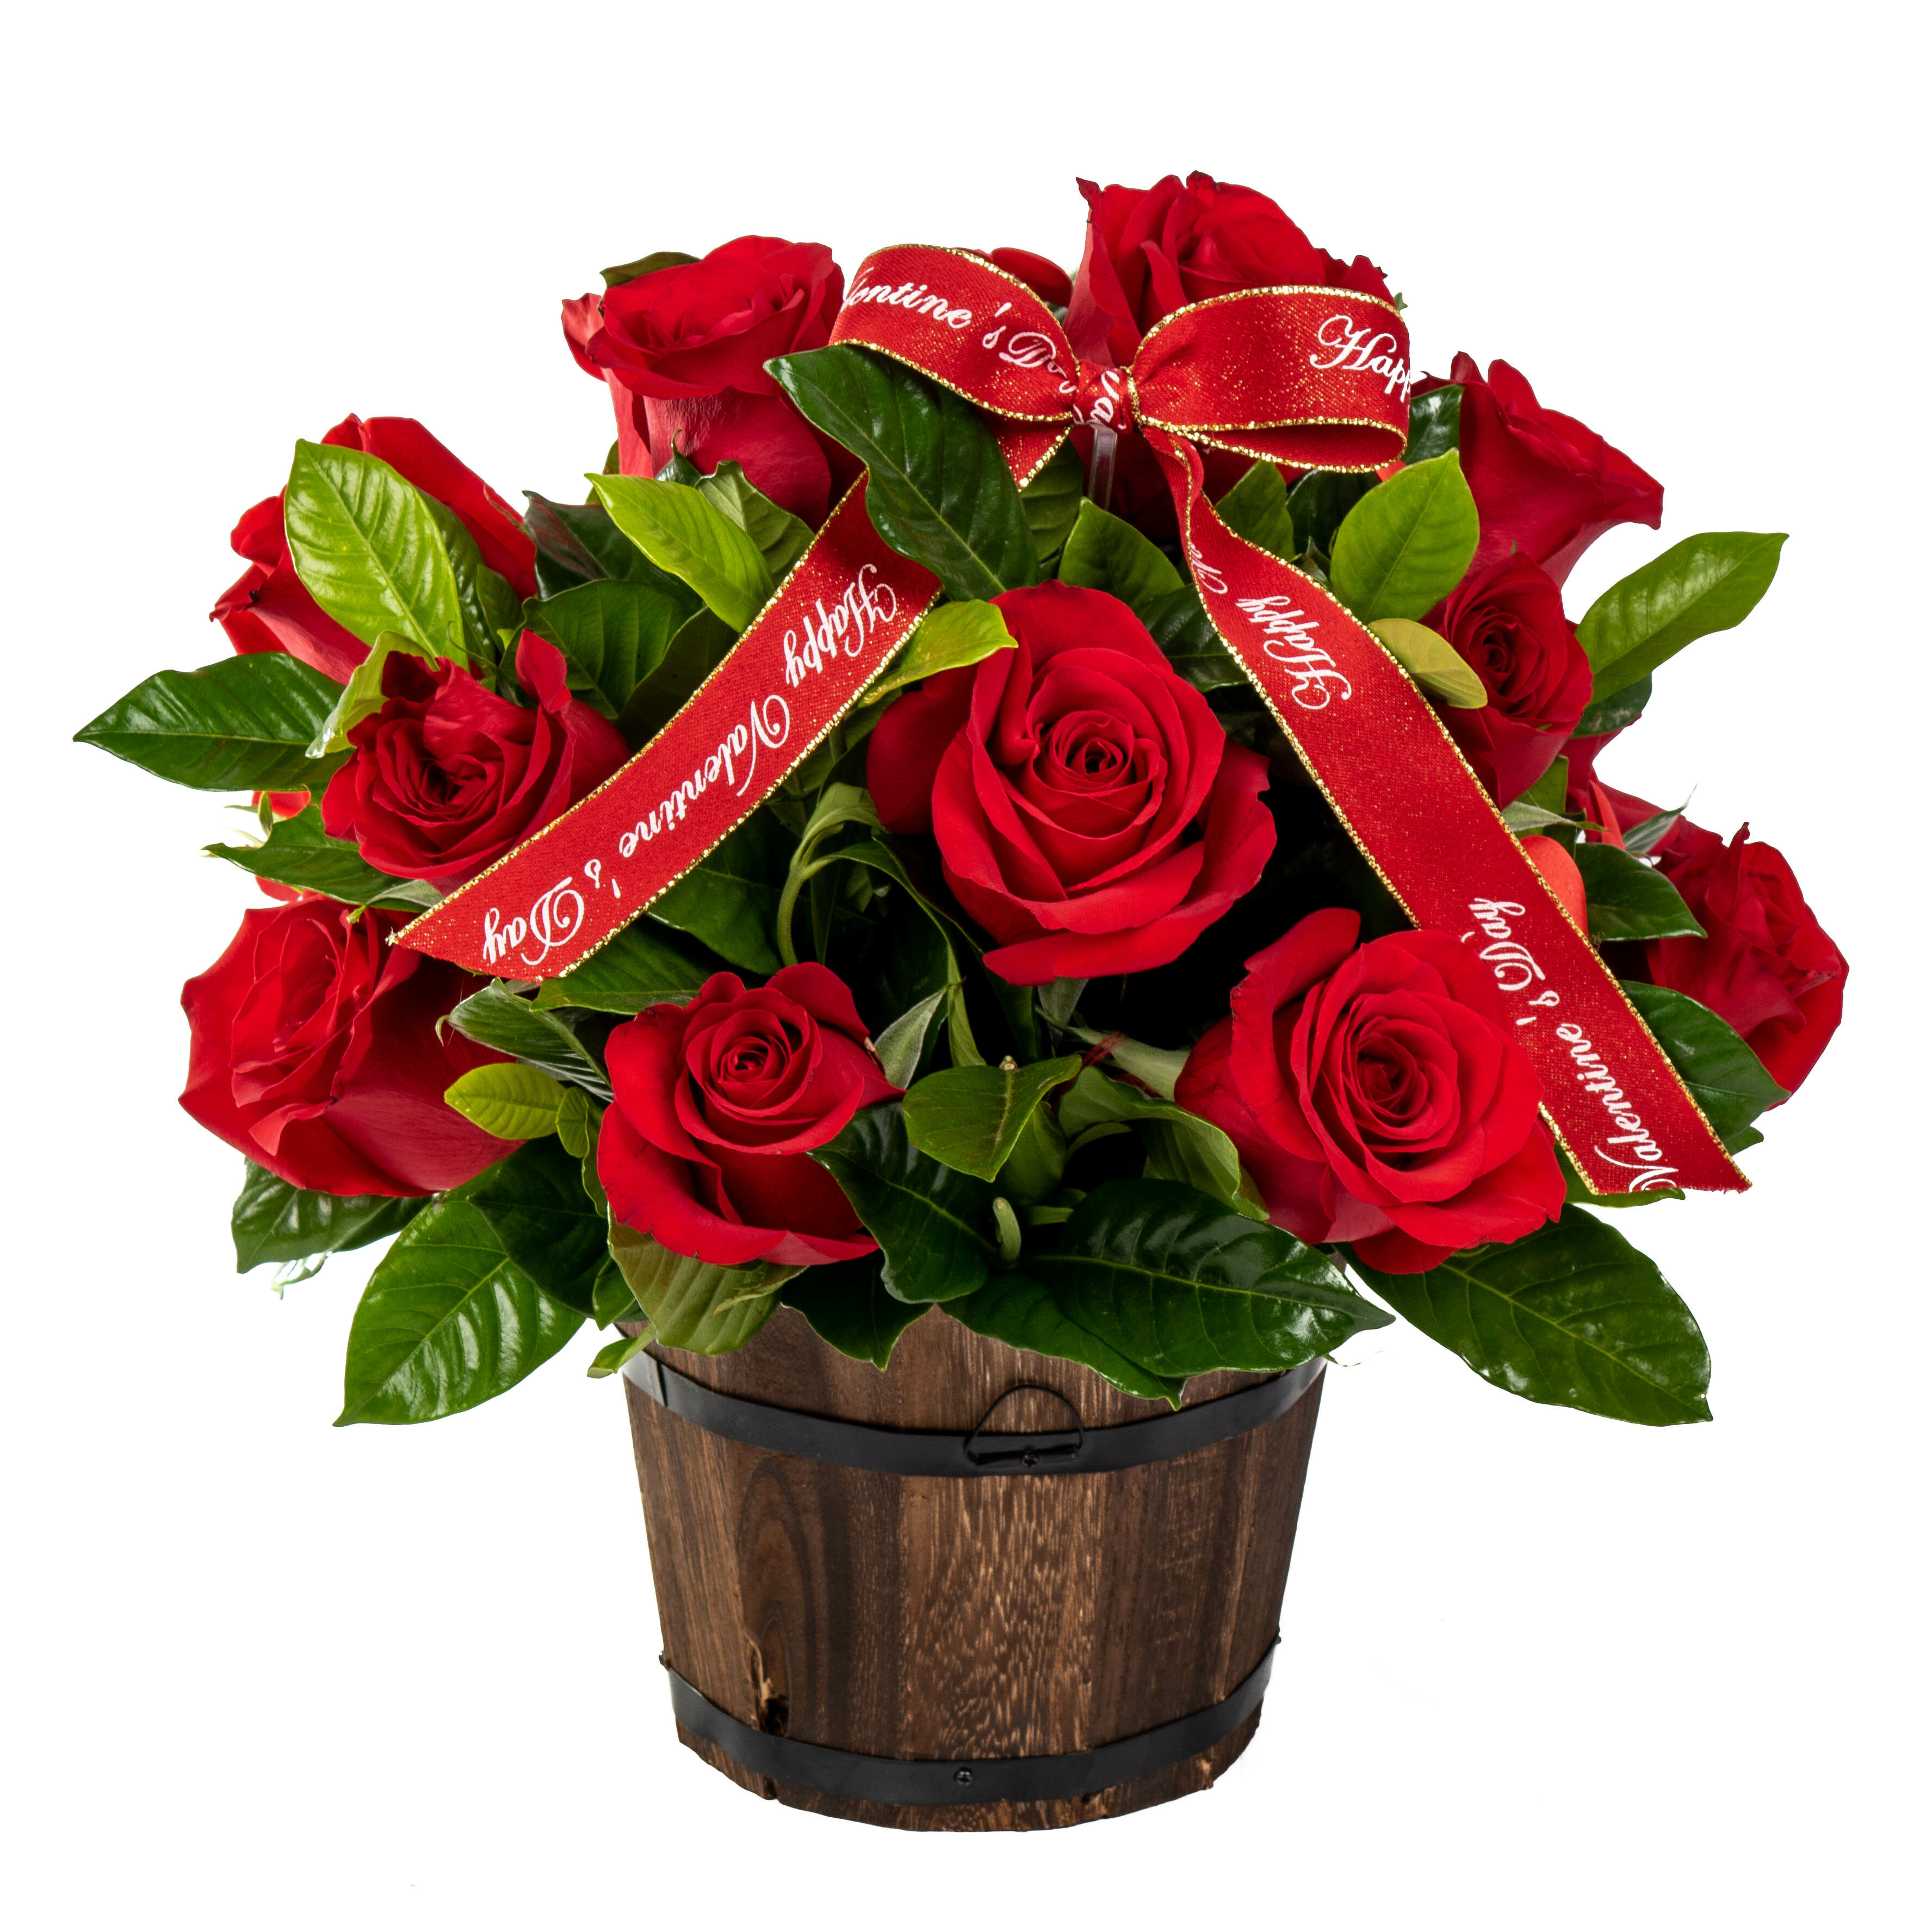 Zoe Arreglo de 16 rosas rojas en barrilito de madera